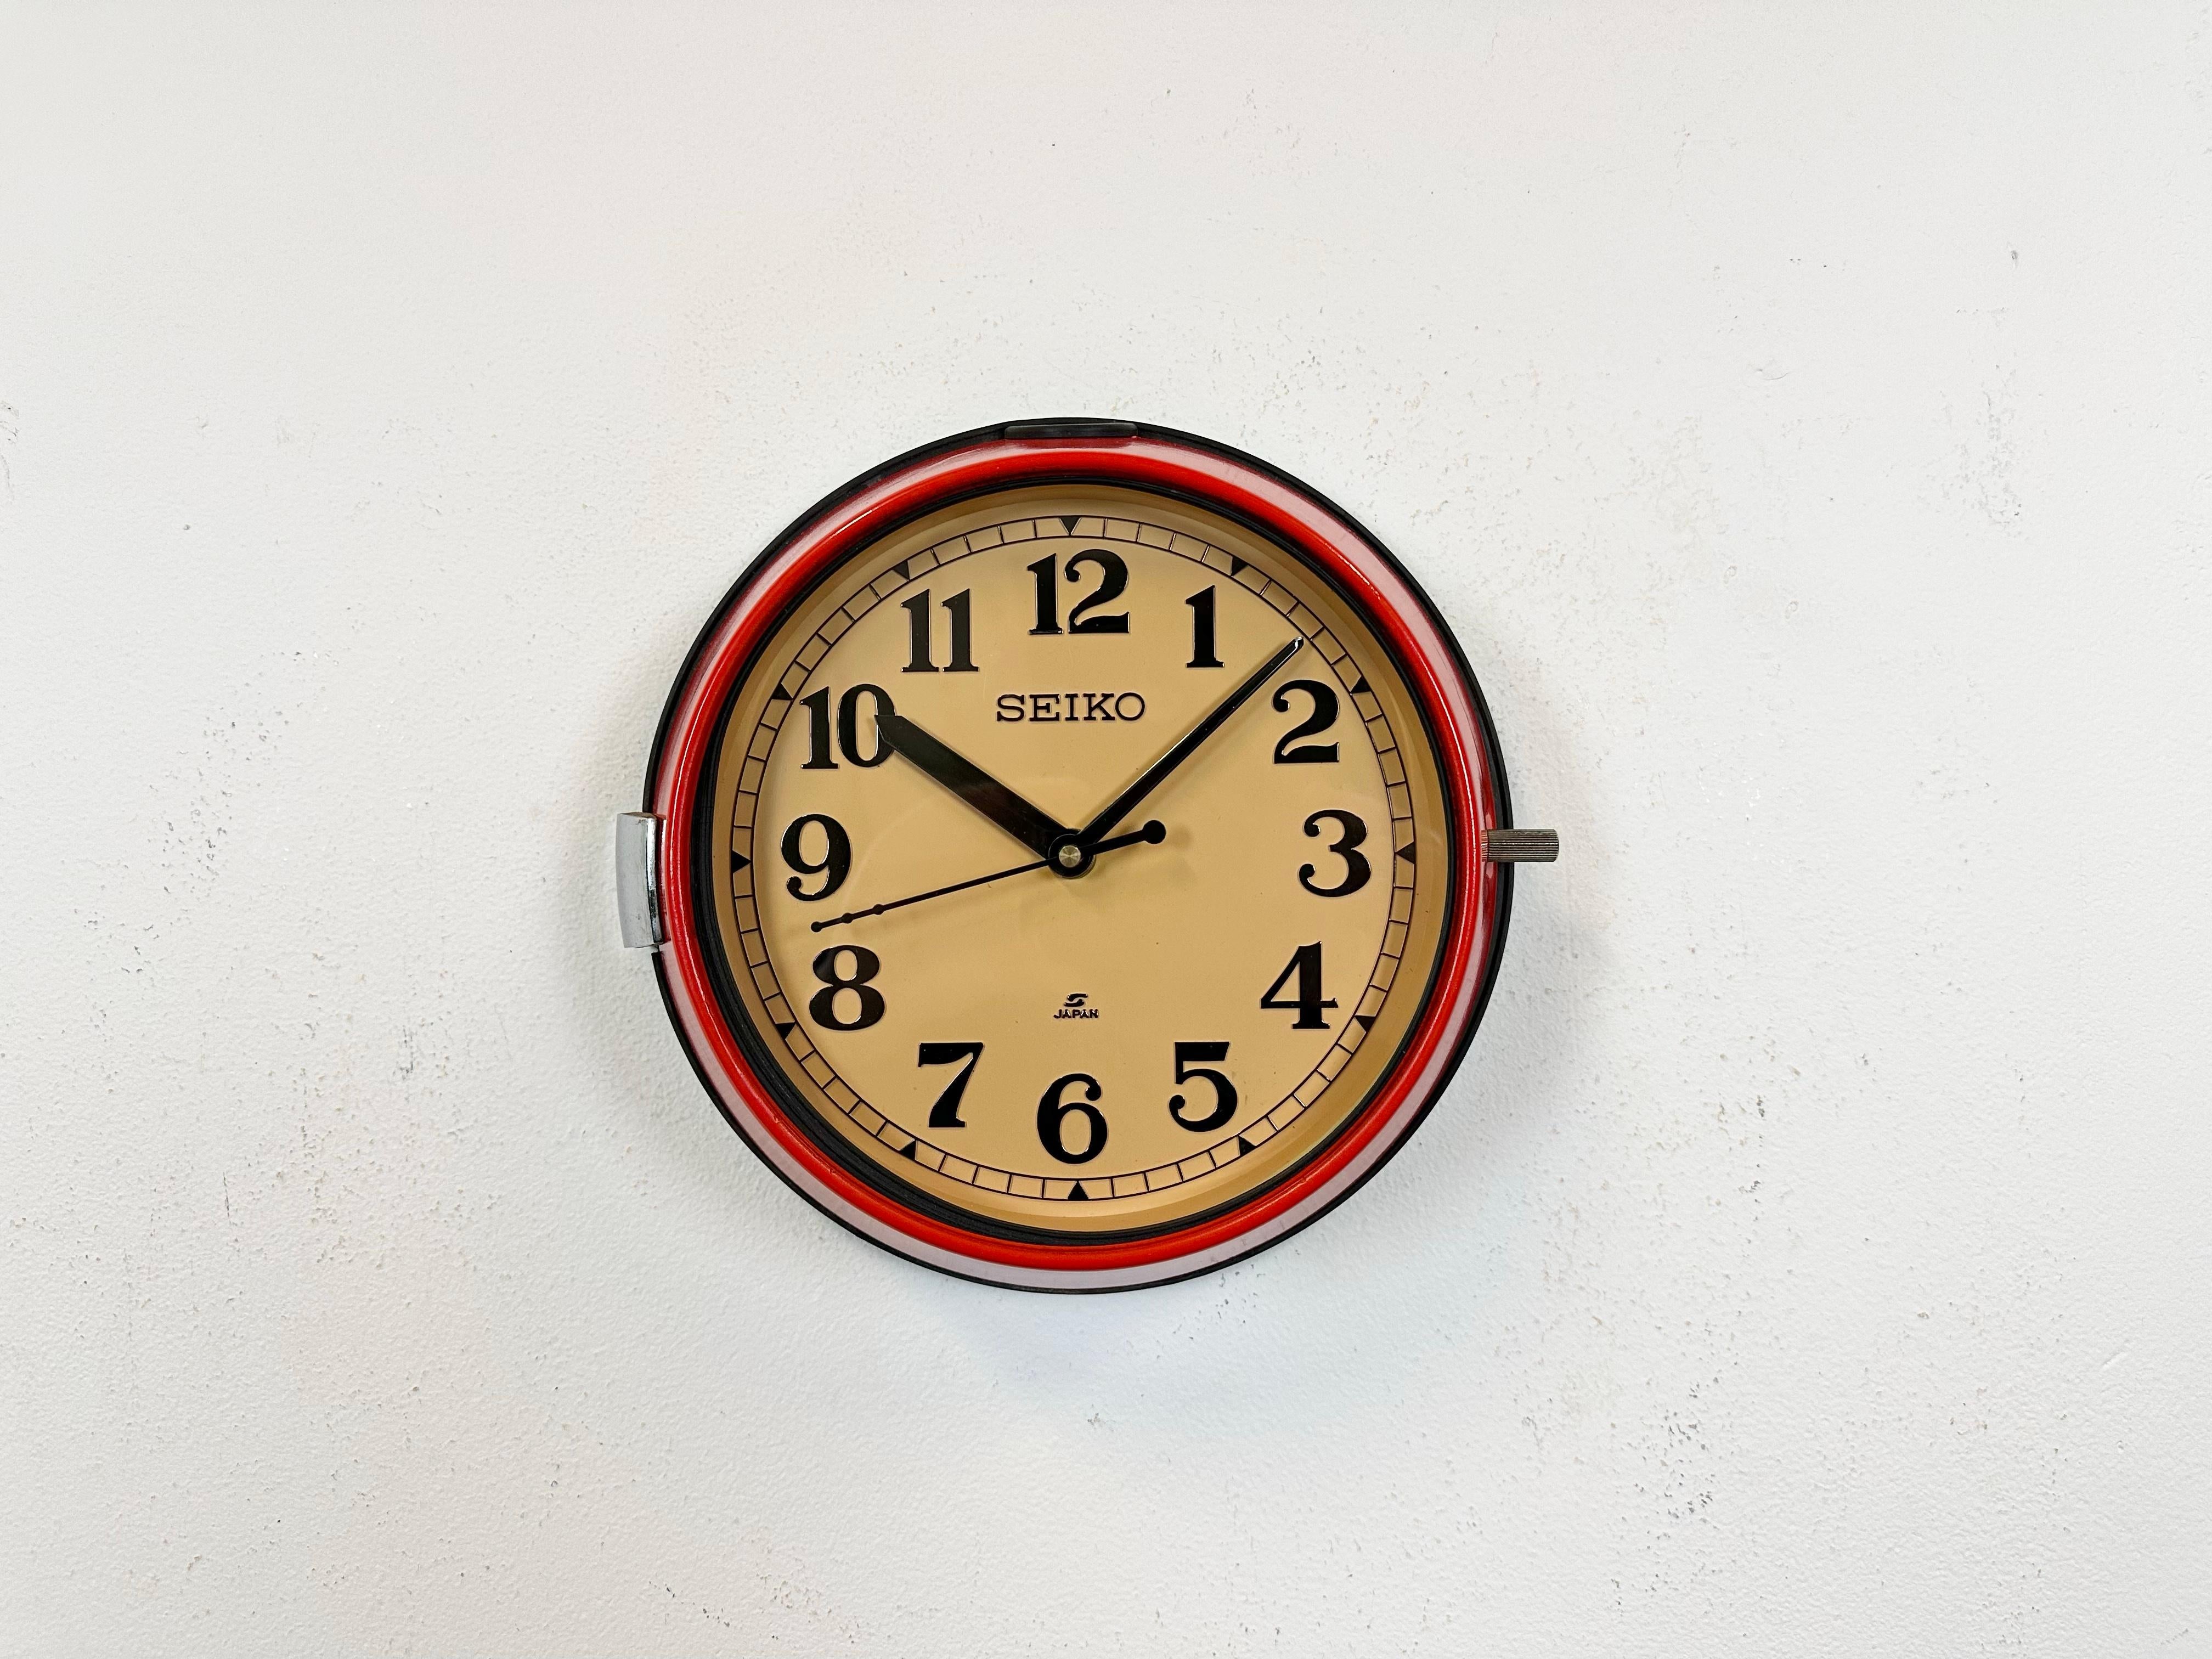 Horloge d'esclave maritime Seiko vintage, conçue dans les années 1970 et produite jusqu'aux années 1990. Ces horloges étaient utilisées sur les grands pétroliers et cargos japonais. Il comporte un cadre métallique rouge, un cadran en plastique et un